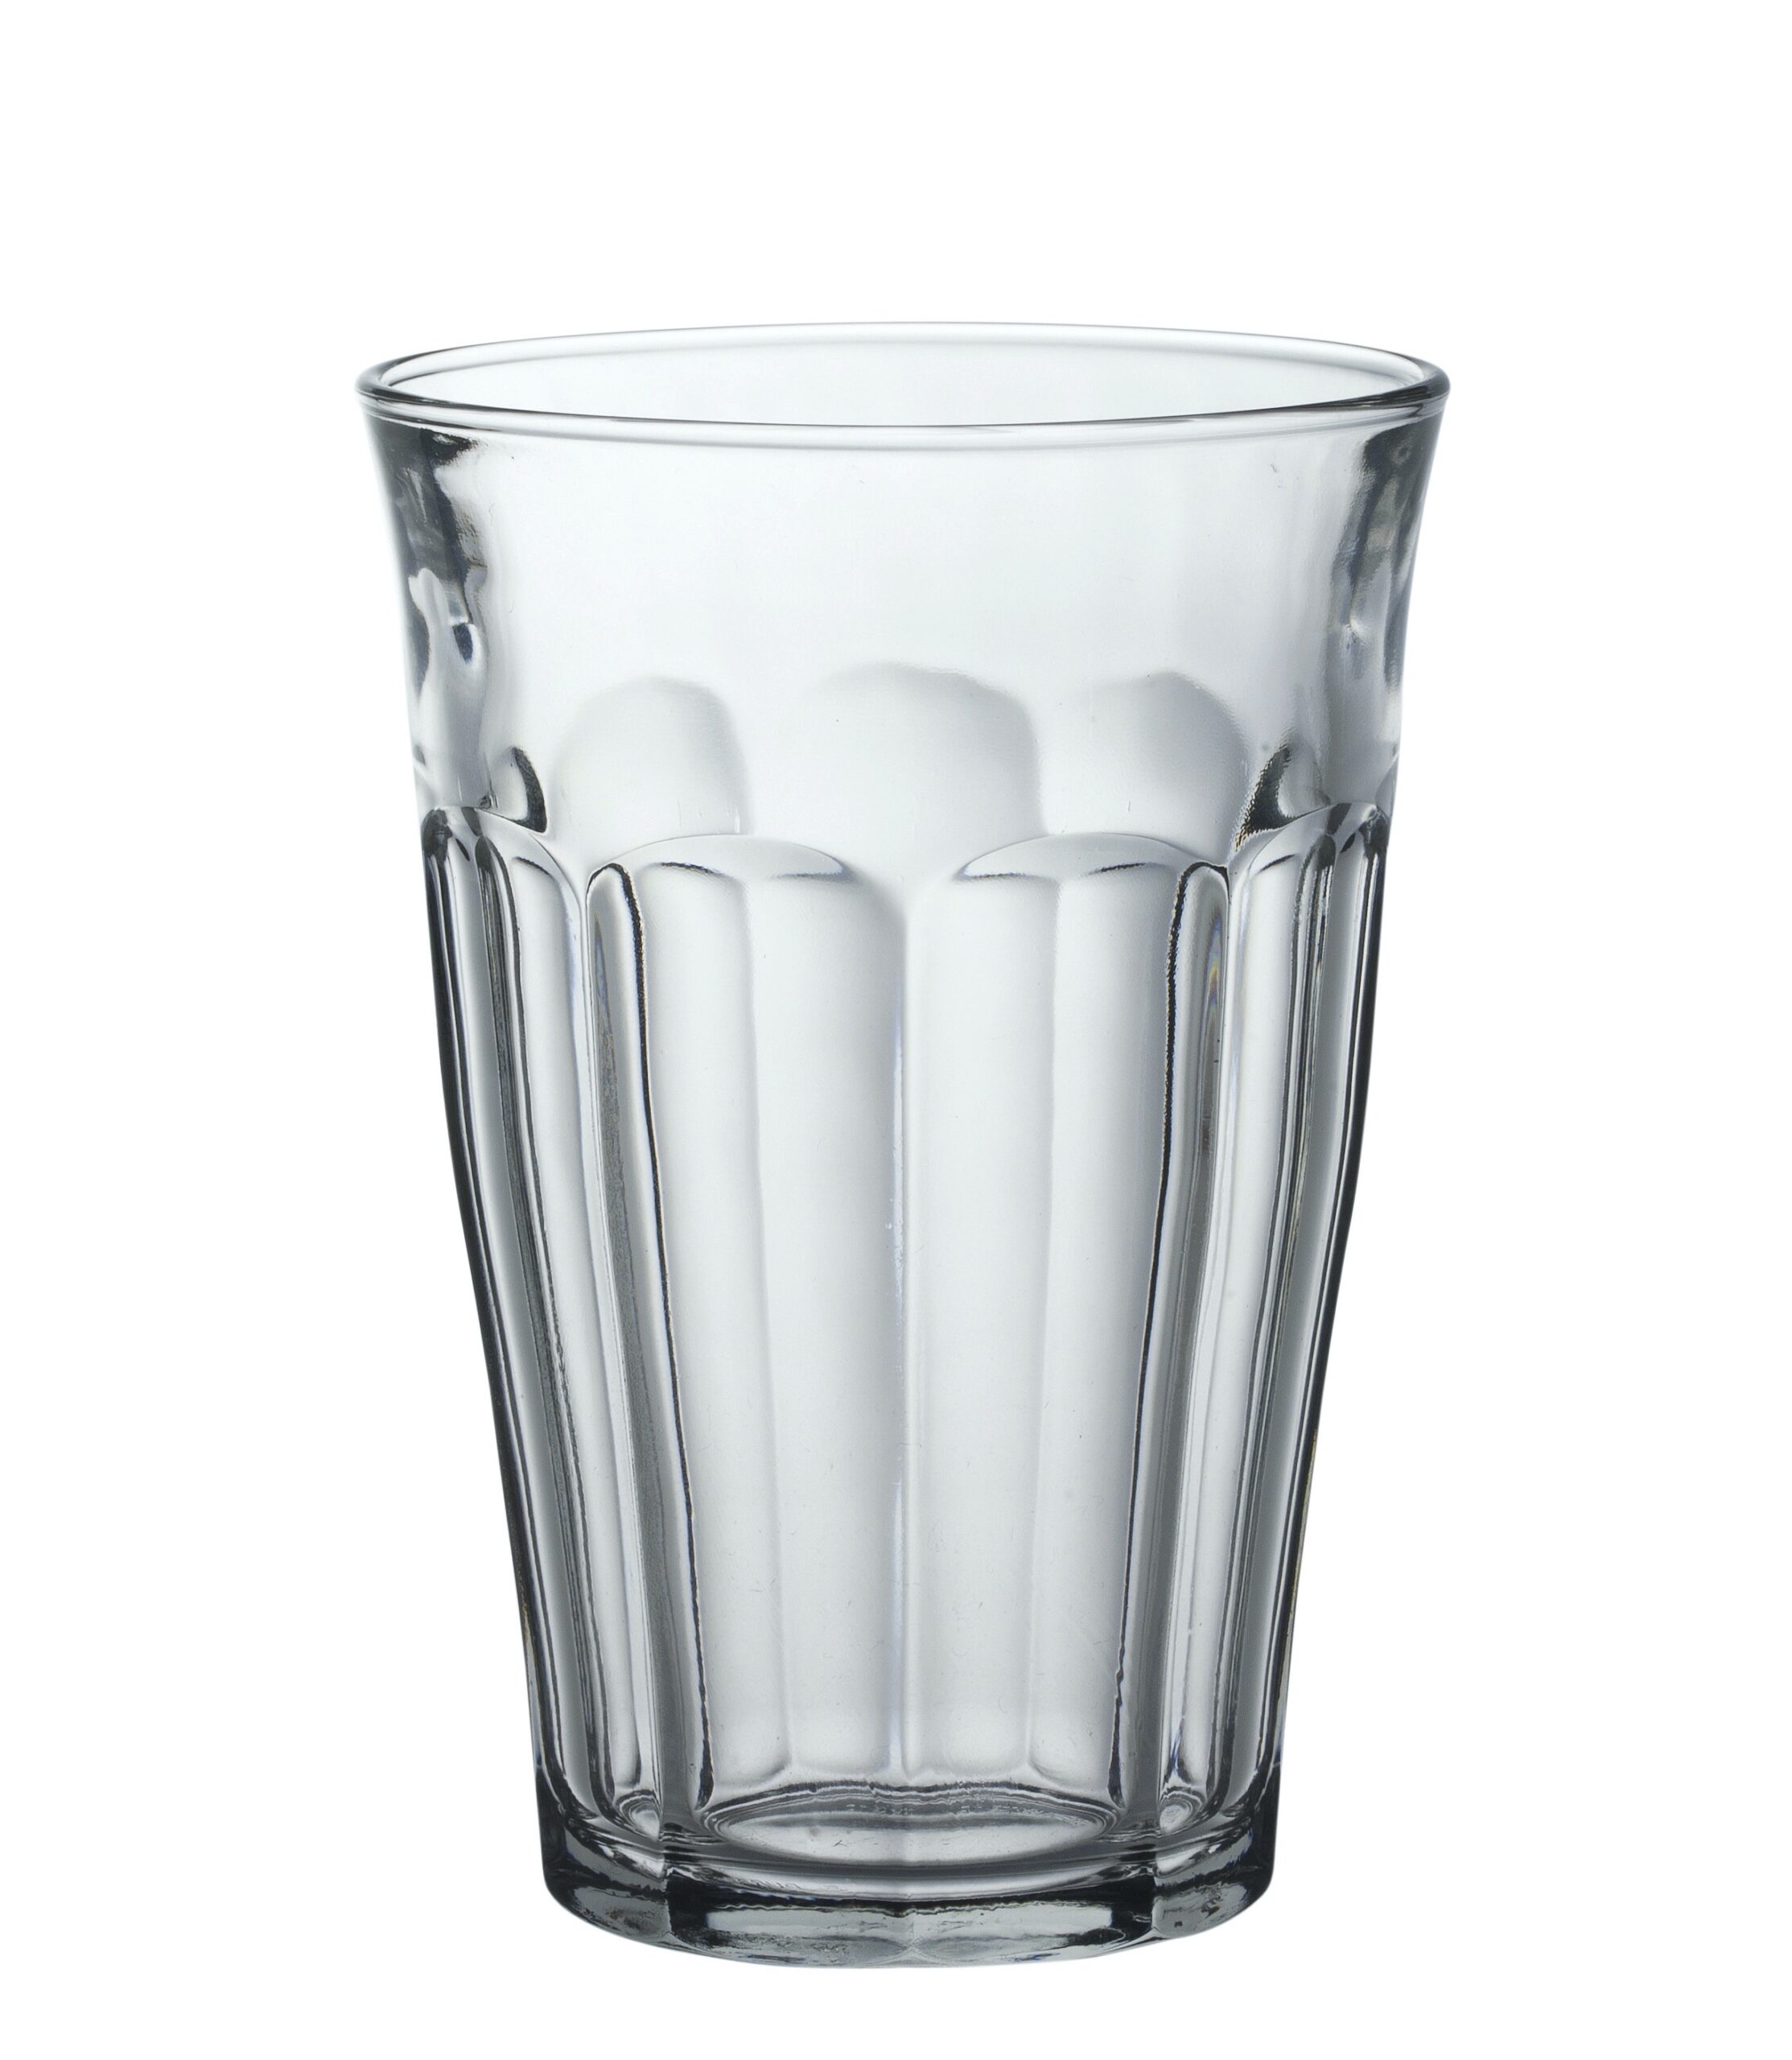 Duralex Picardie Tumbler, Trinkglas, 360ml, mit Füllstrich bei 0.3l, Glas gehärtet, transparent, 6 Stück